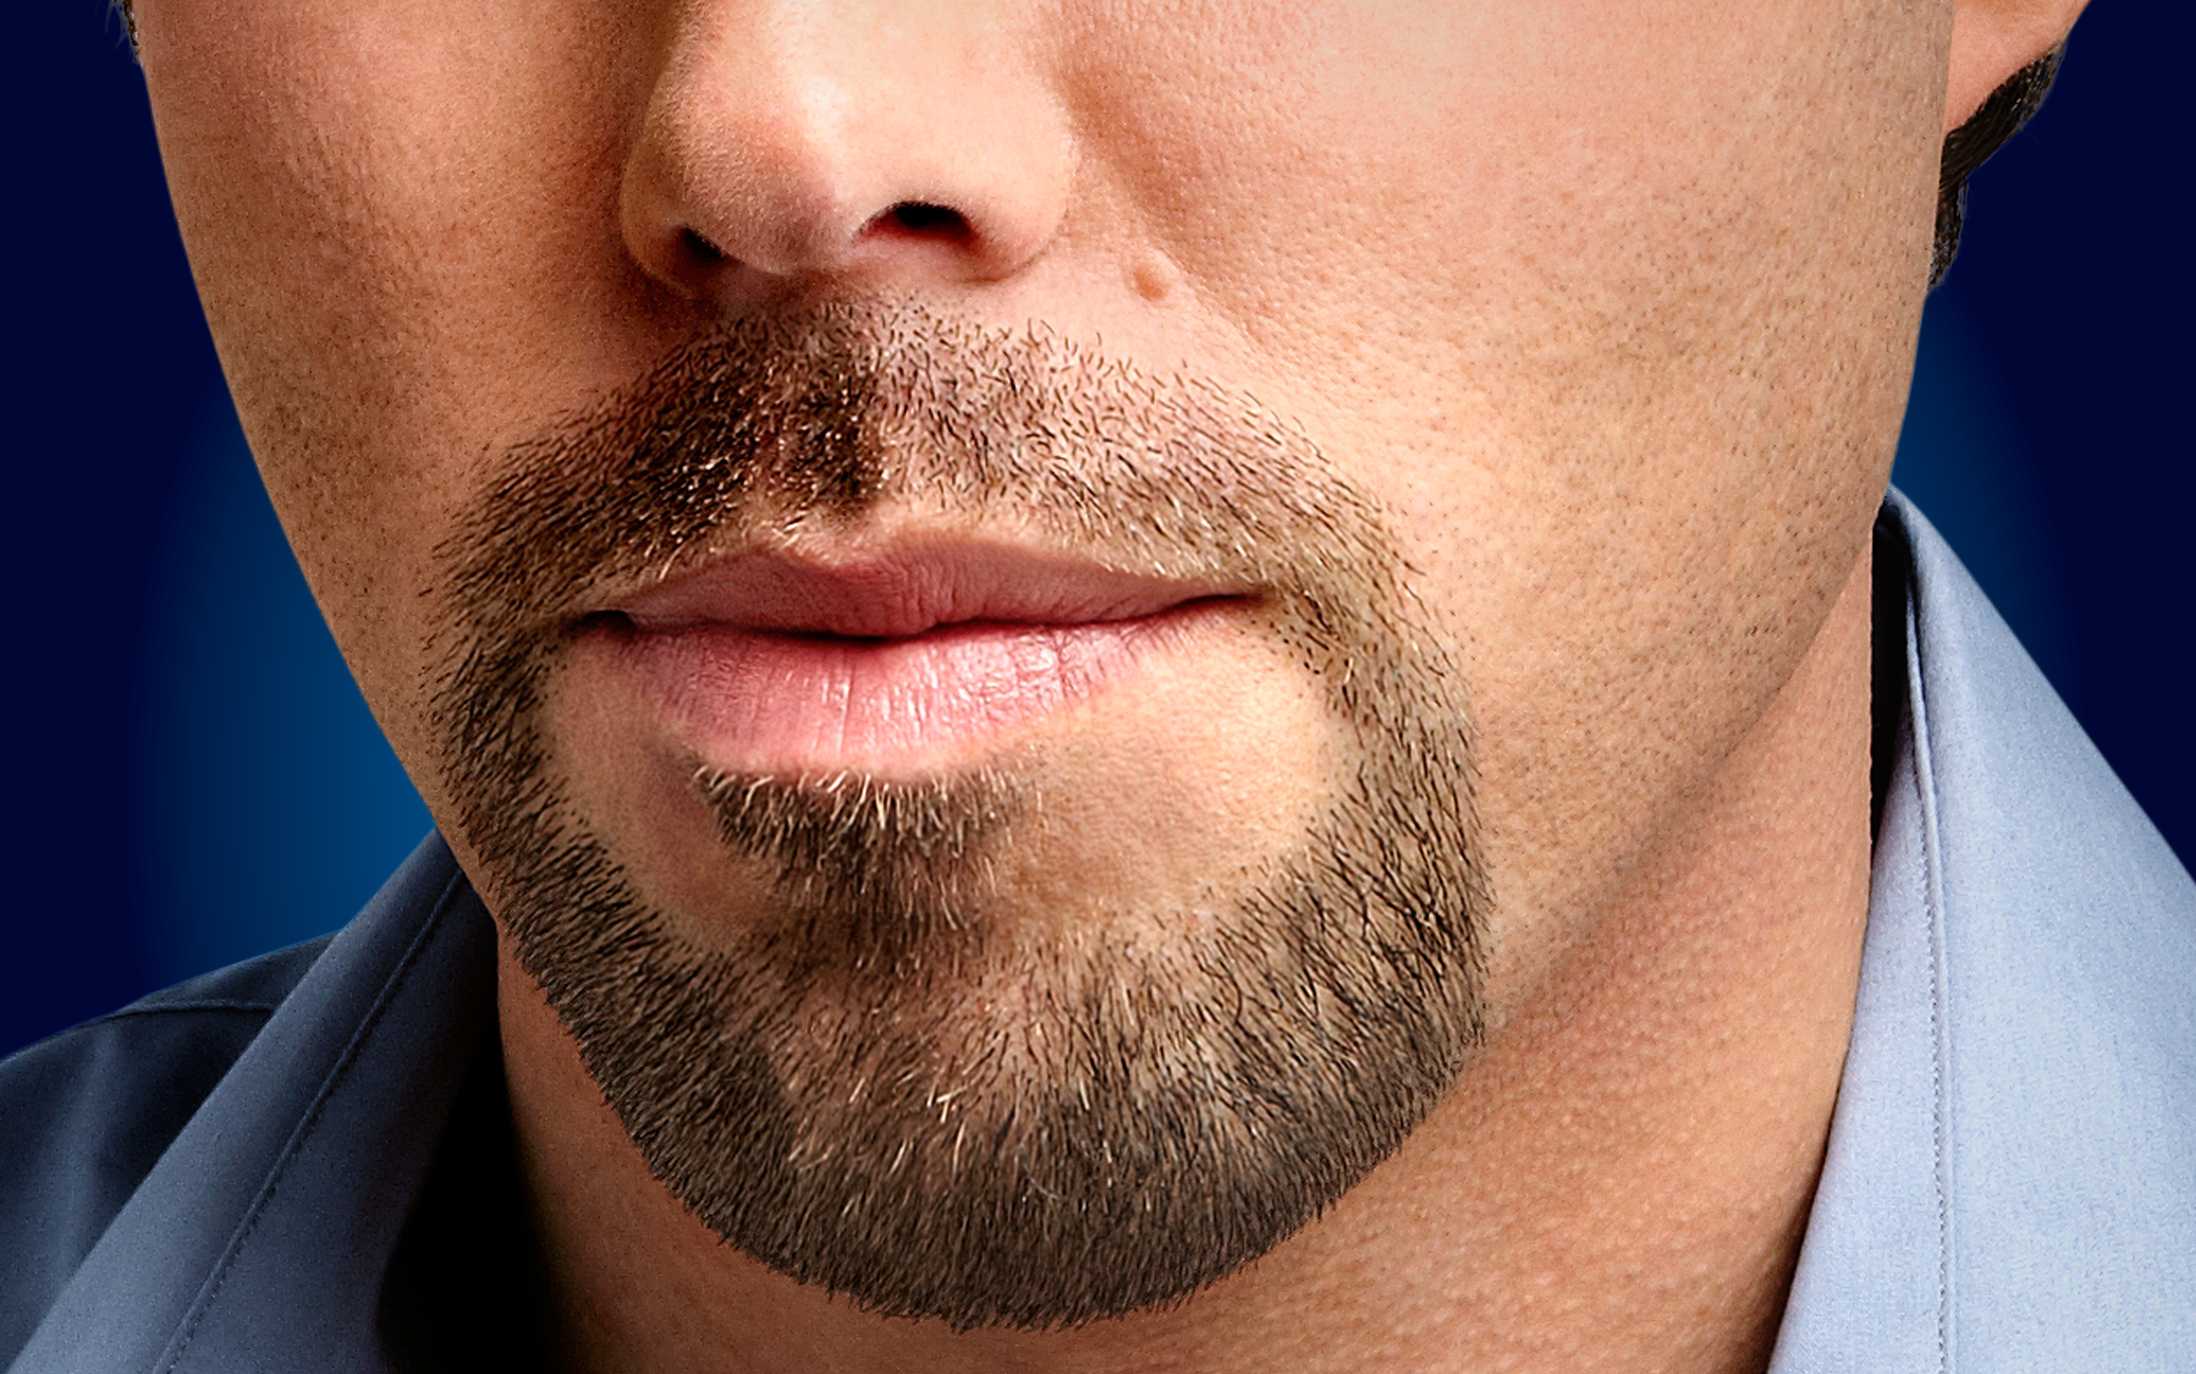 Борода эспаньолка: как выглядит на фото, кому подходит, как сделать в домашних условиях